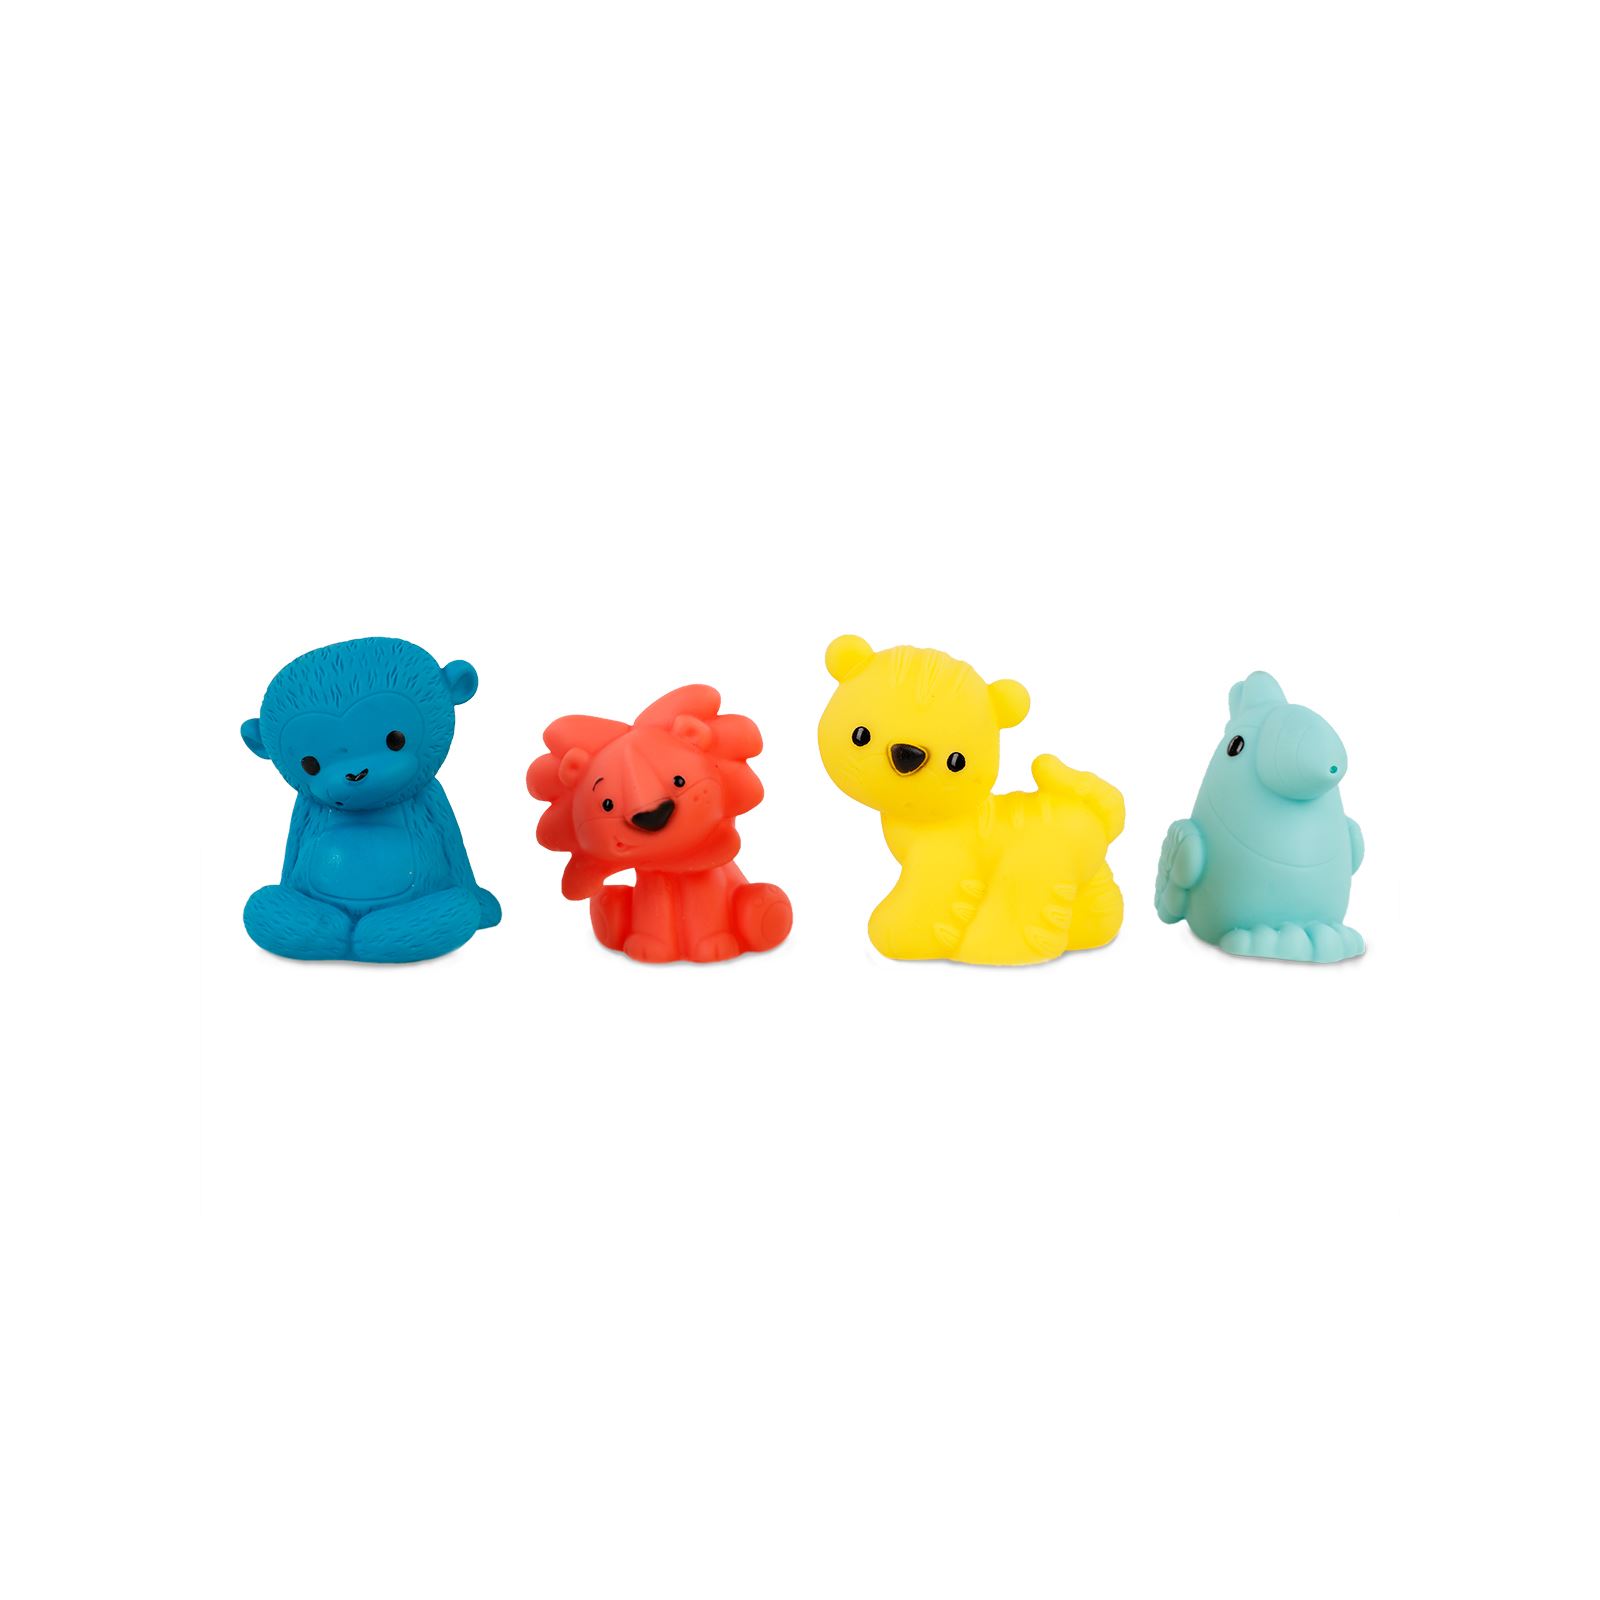 Vinyland 4'lü Komik Hayvancıklar Banyo Oyuncakları 1 Renkli